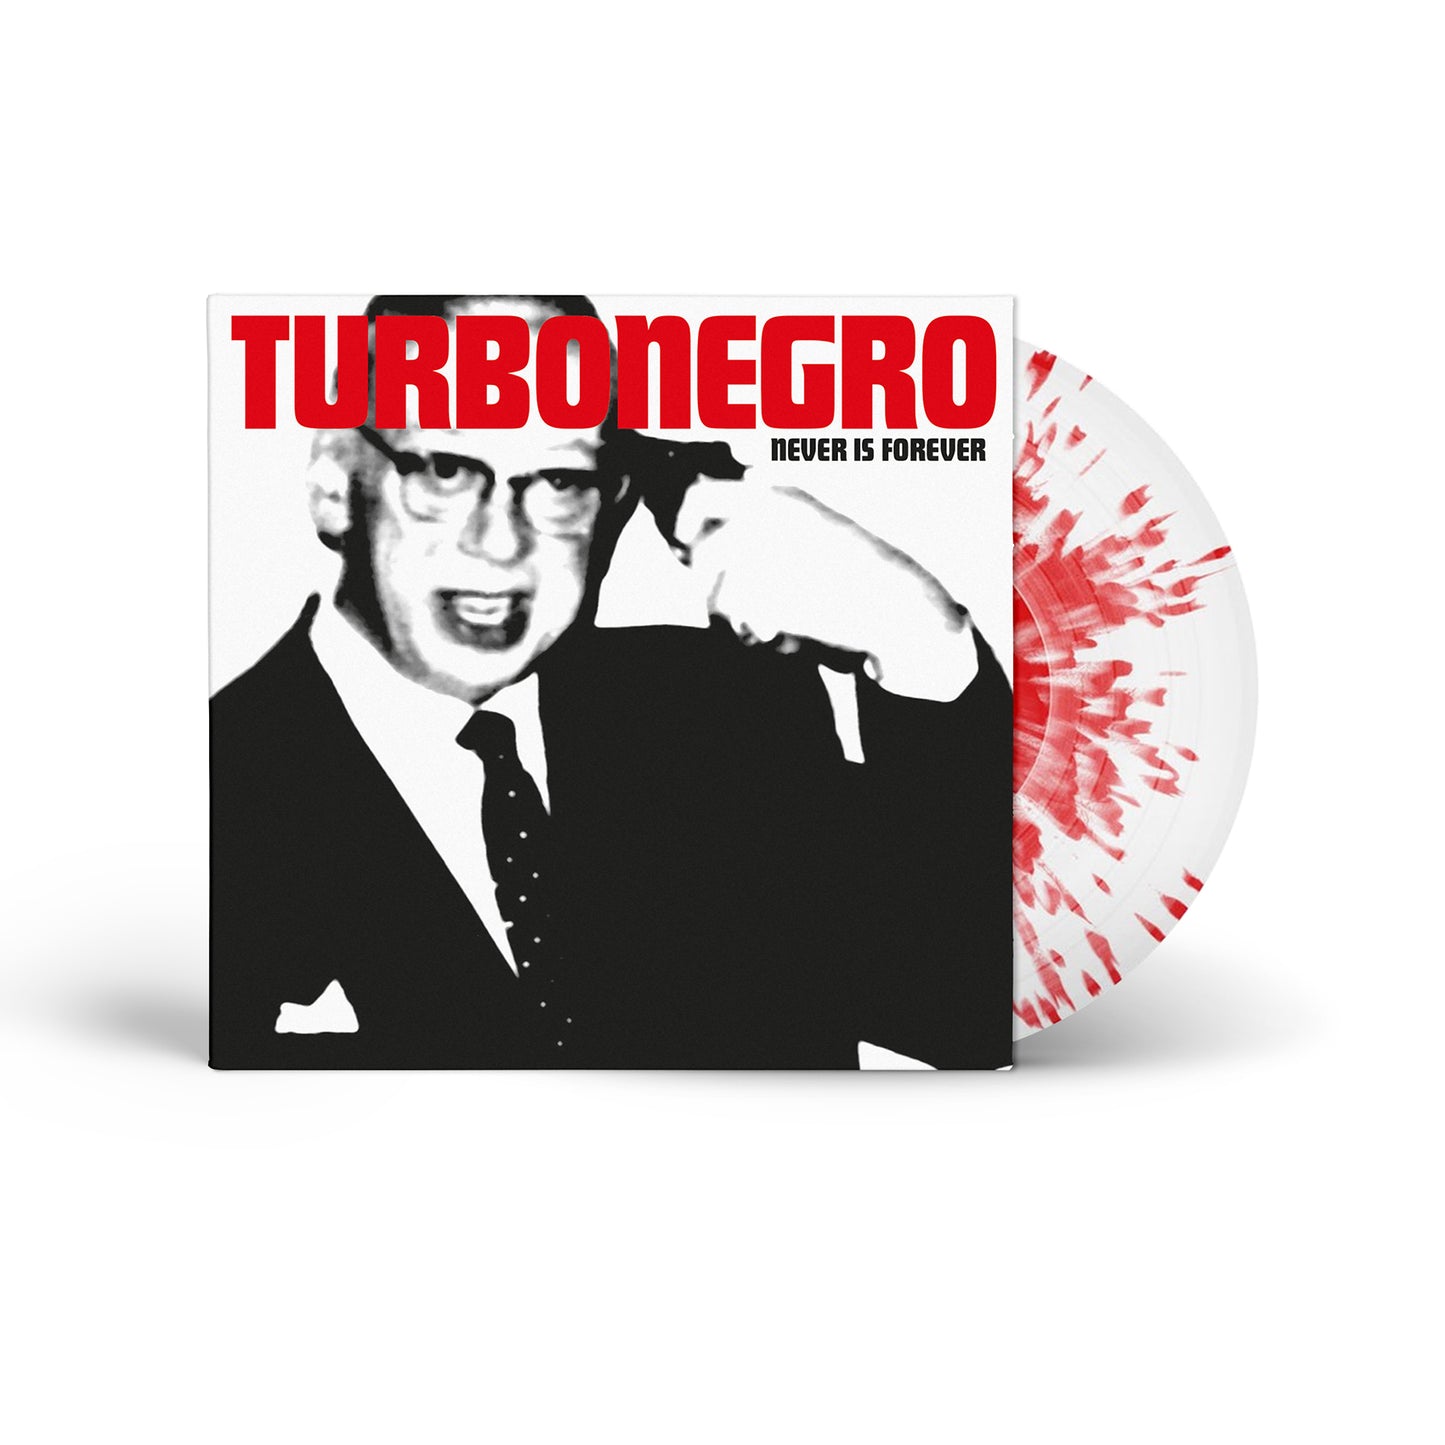 TURBONEGRO - Never is Forever (LP White Vinyl With Red Splatter)